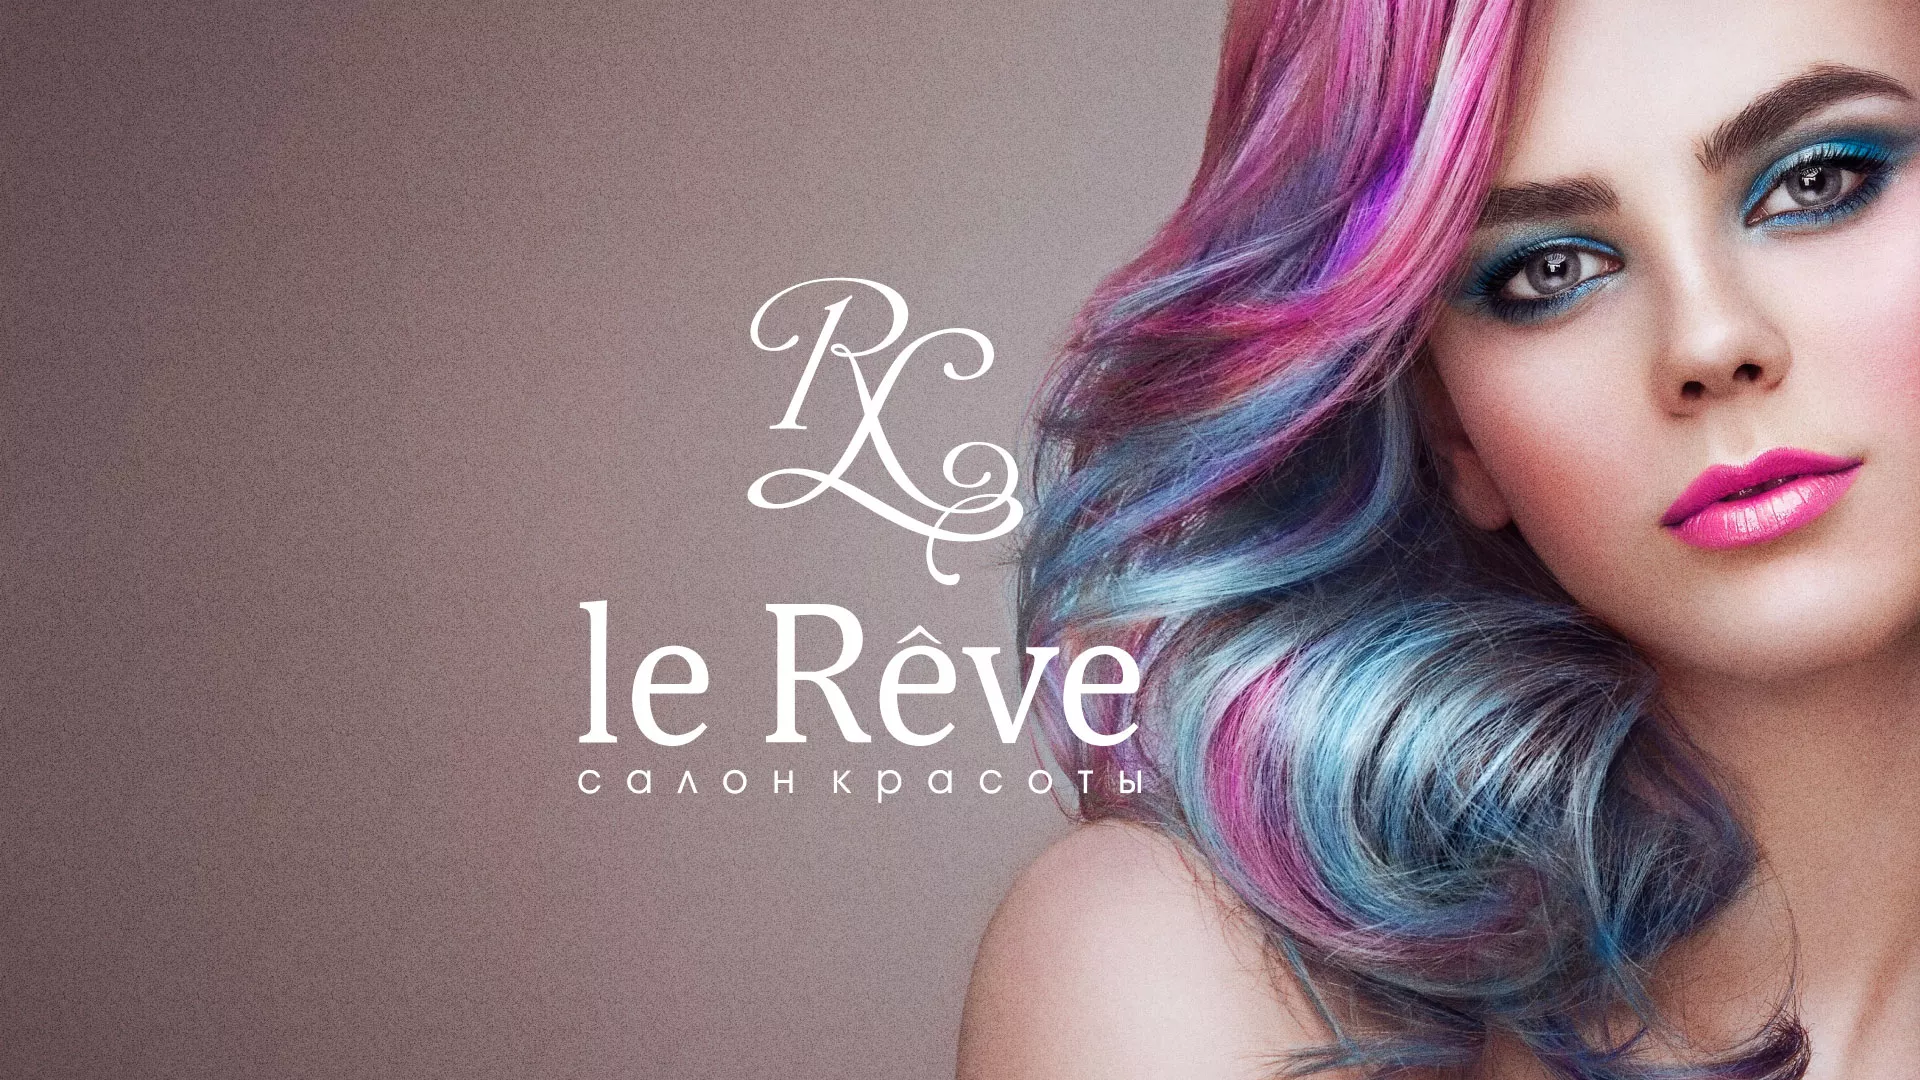 Создание сайта для салона красоты «Le Reve» в Магнитогорске